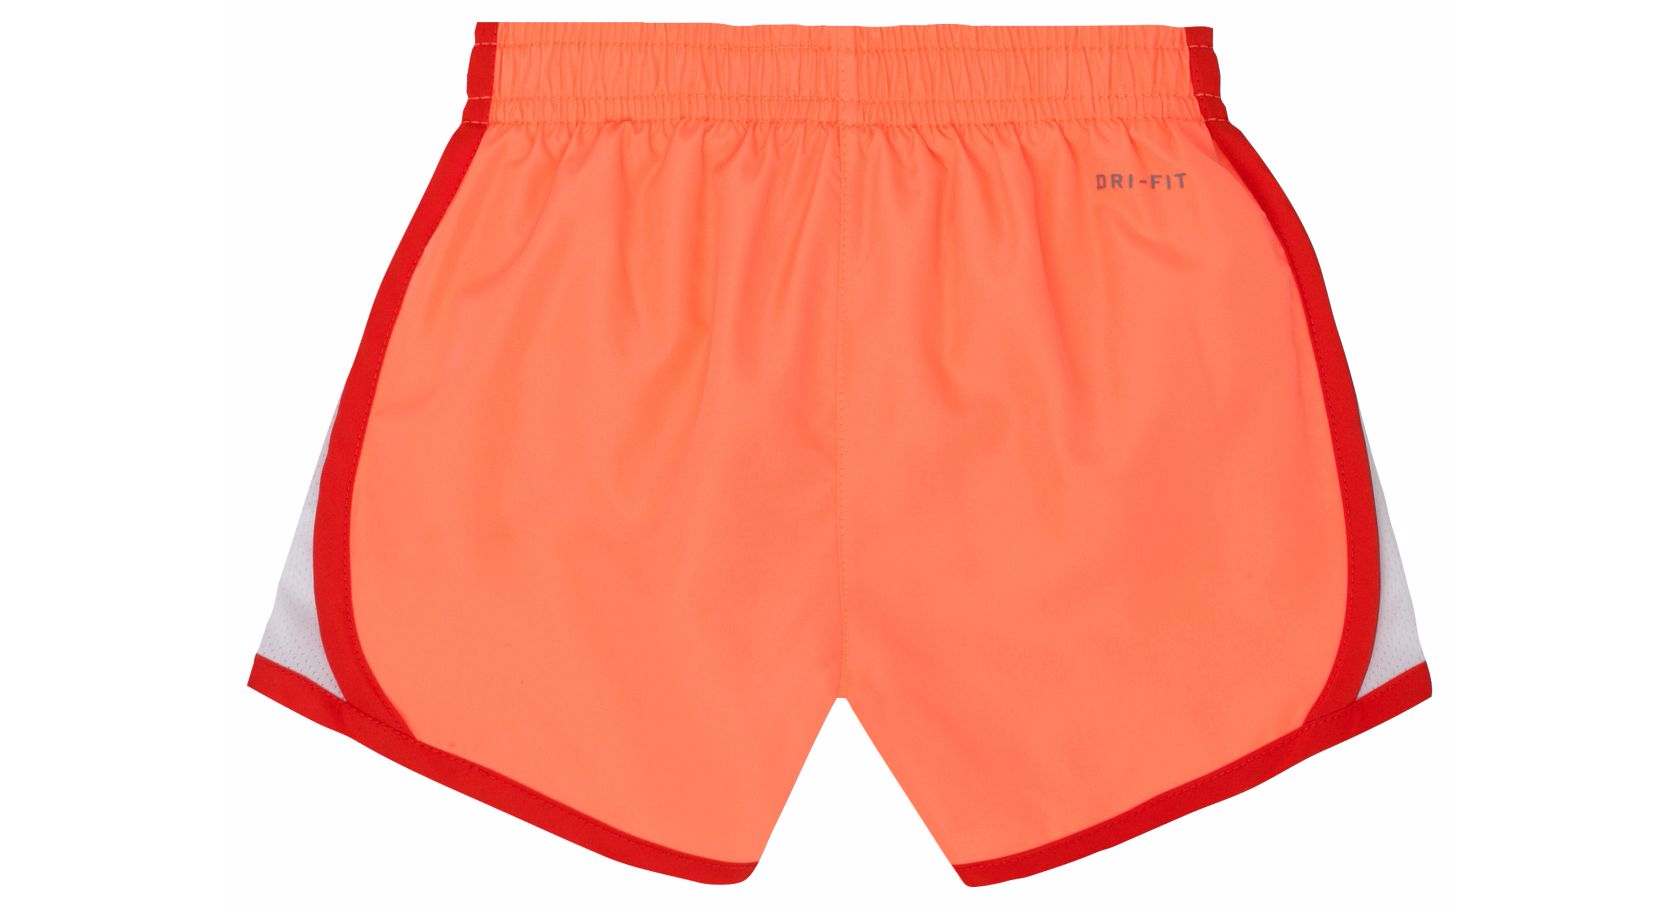 orange running shorts nike adidas png download